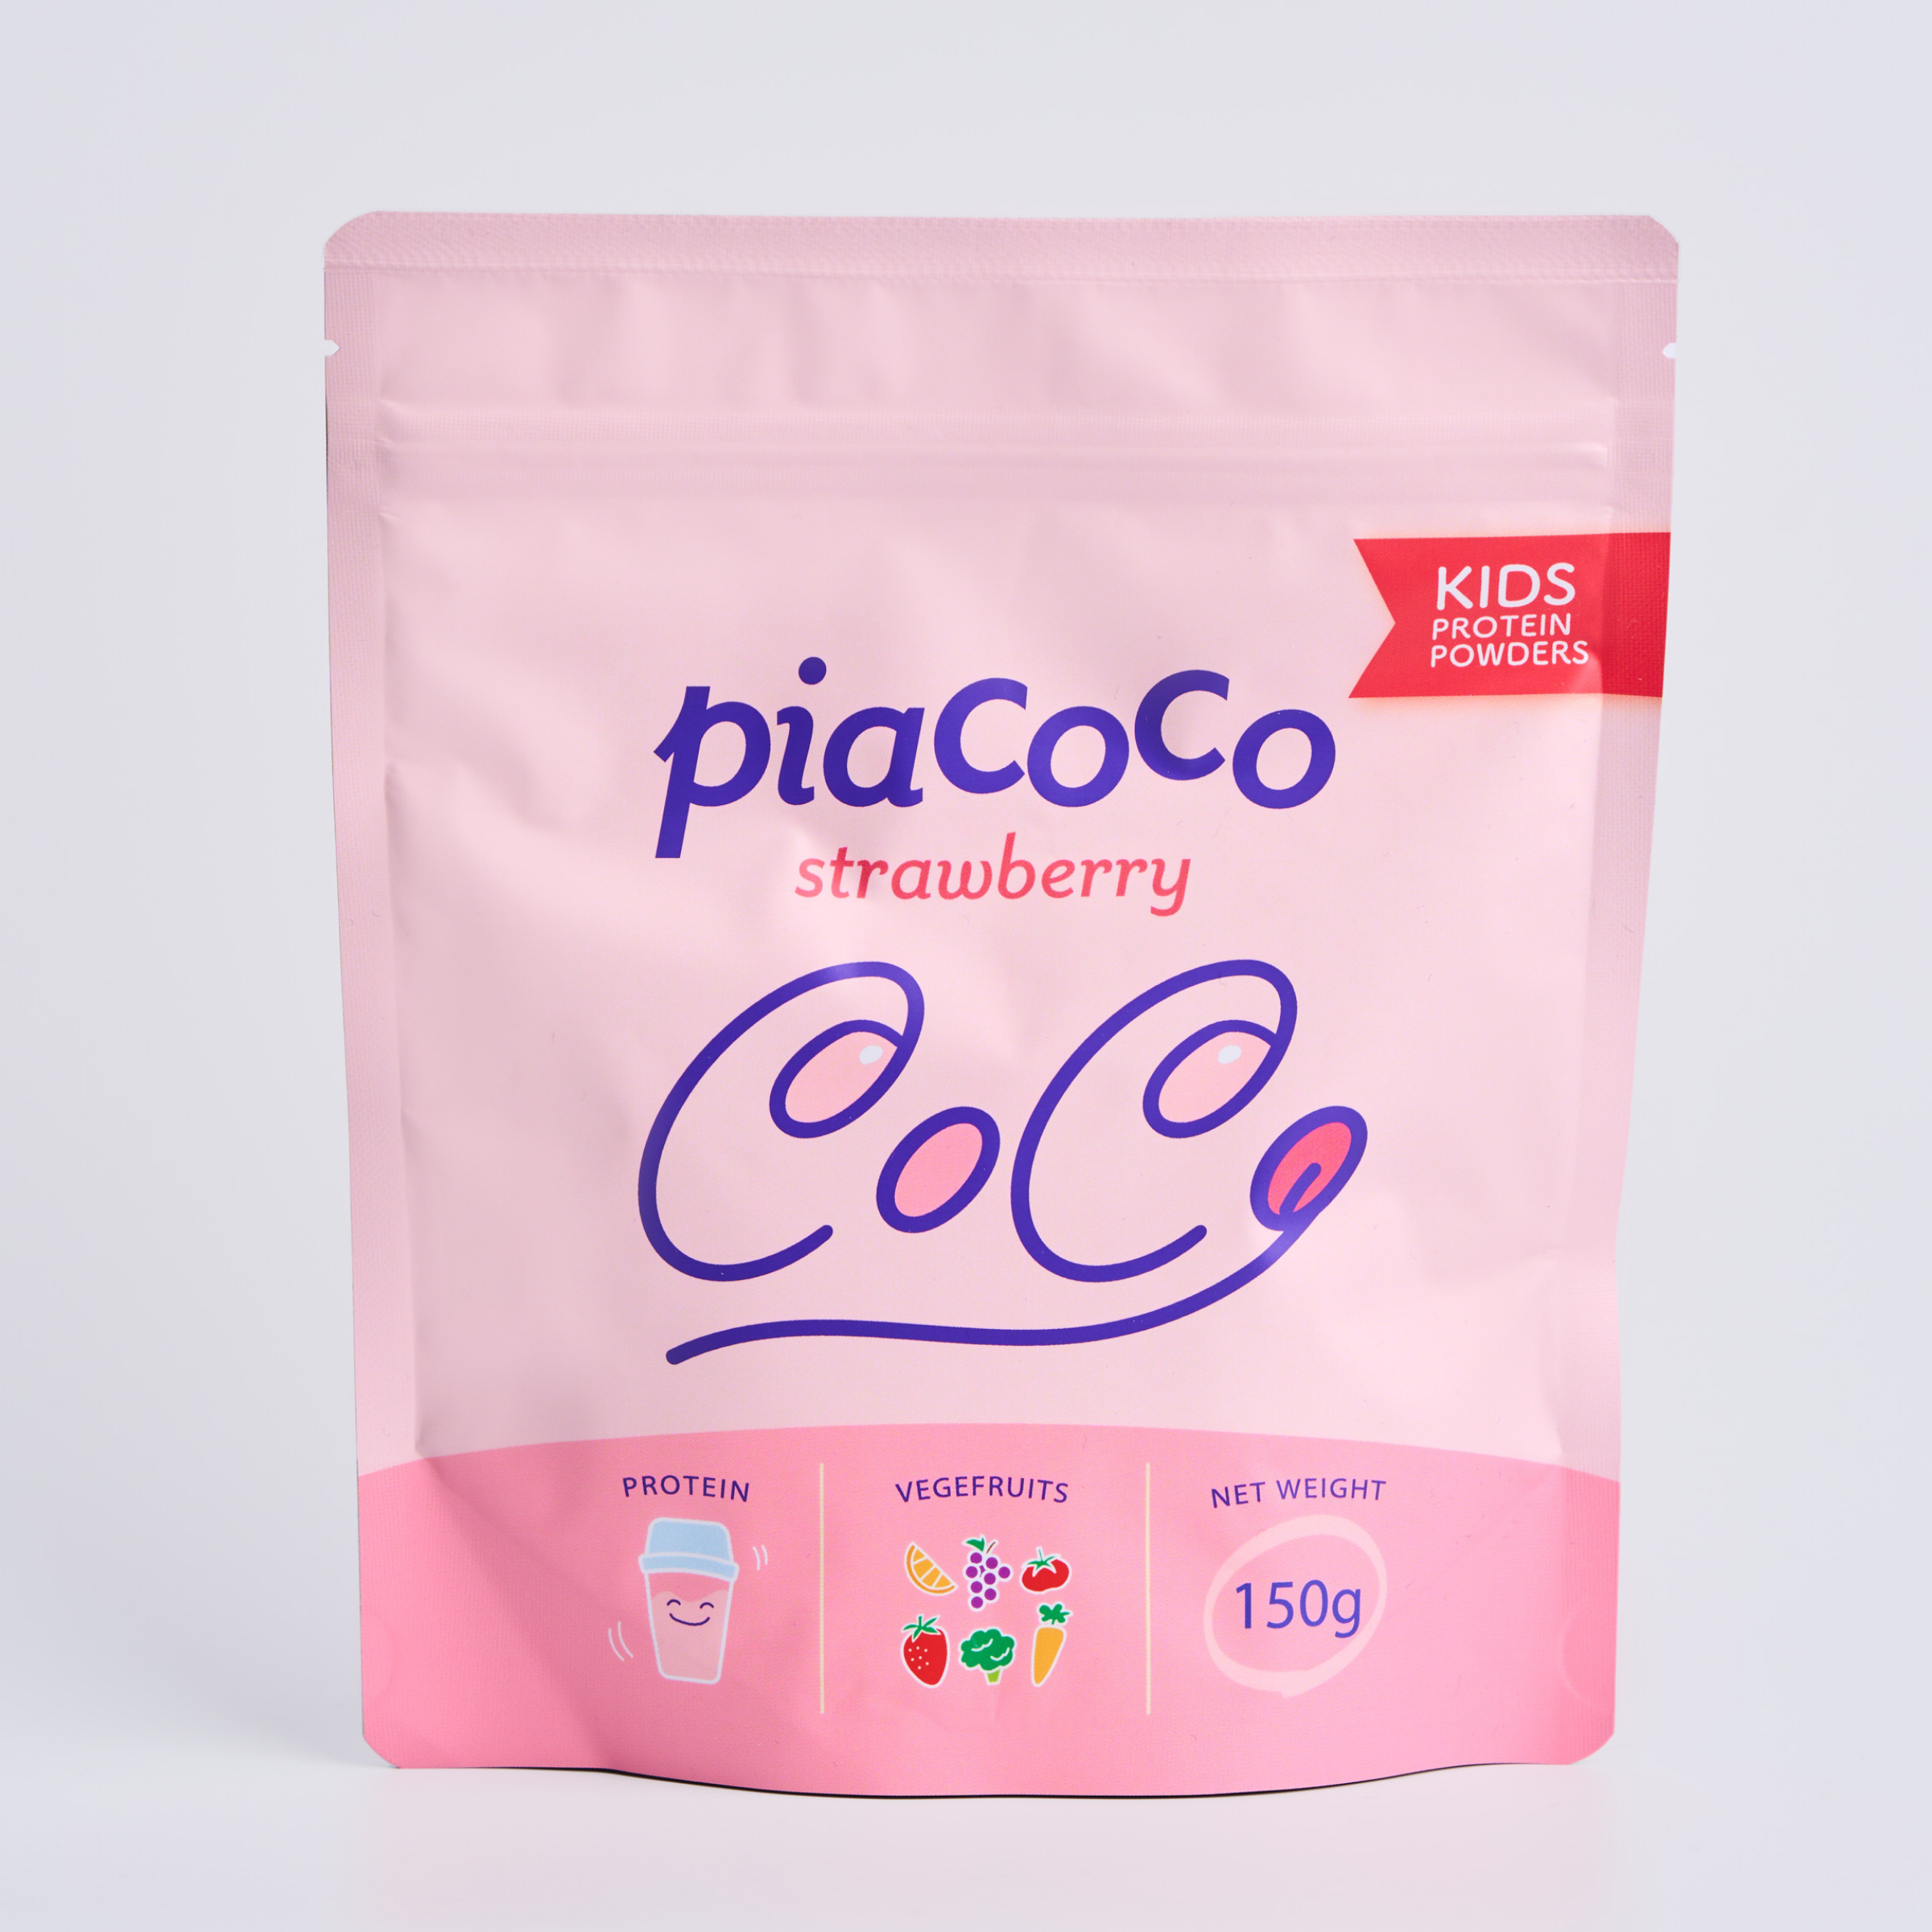 Pia coco ストロベリー
（150g）